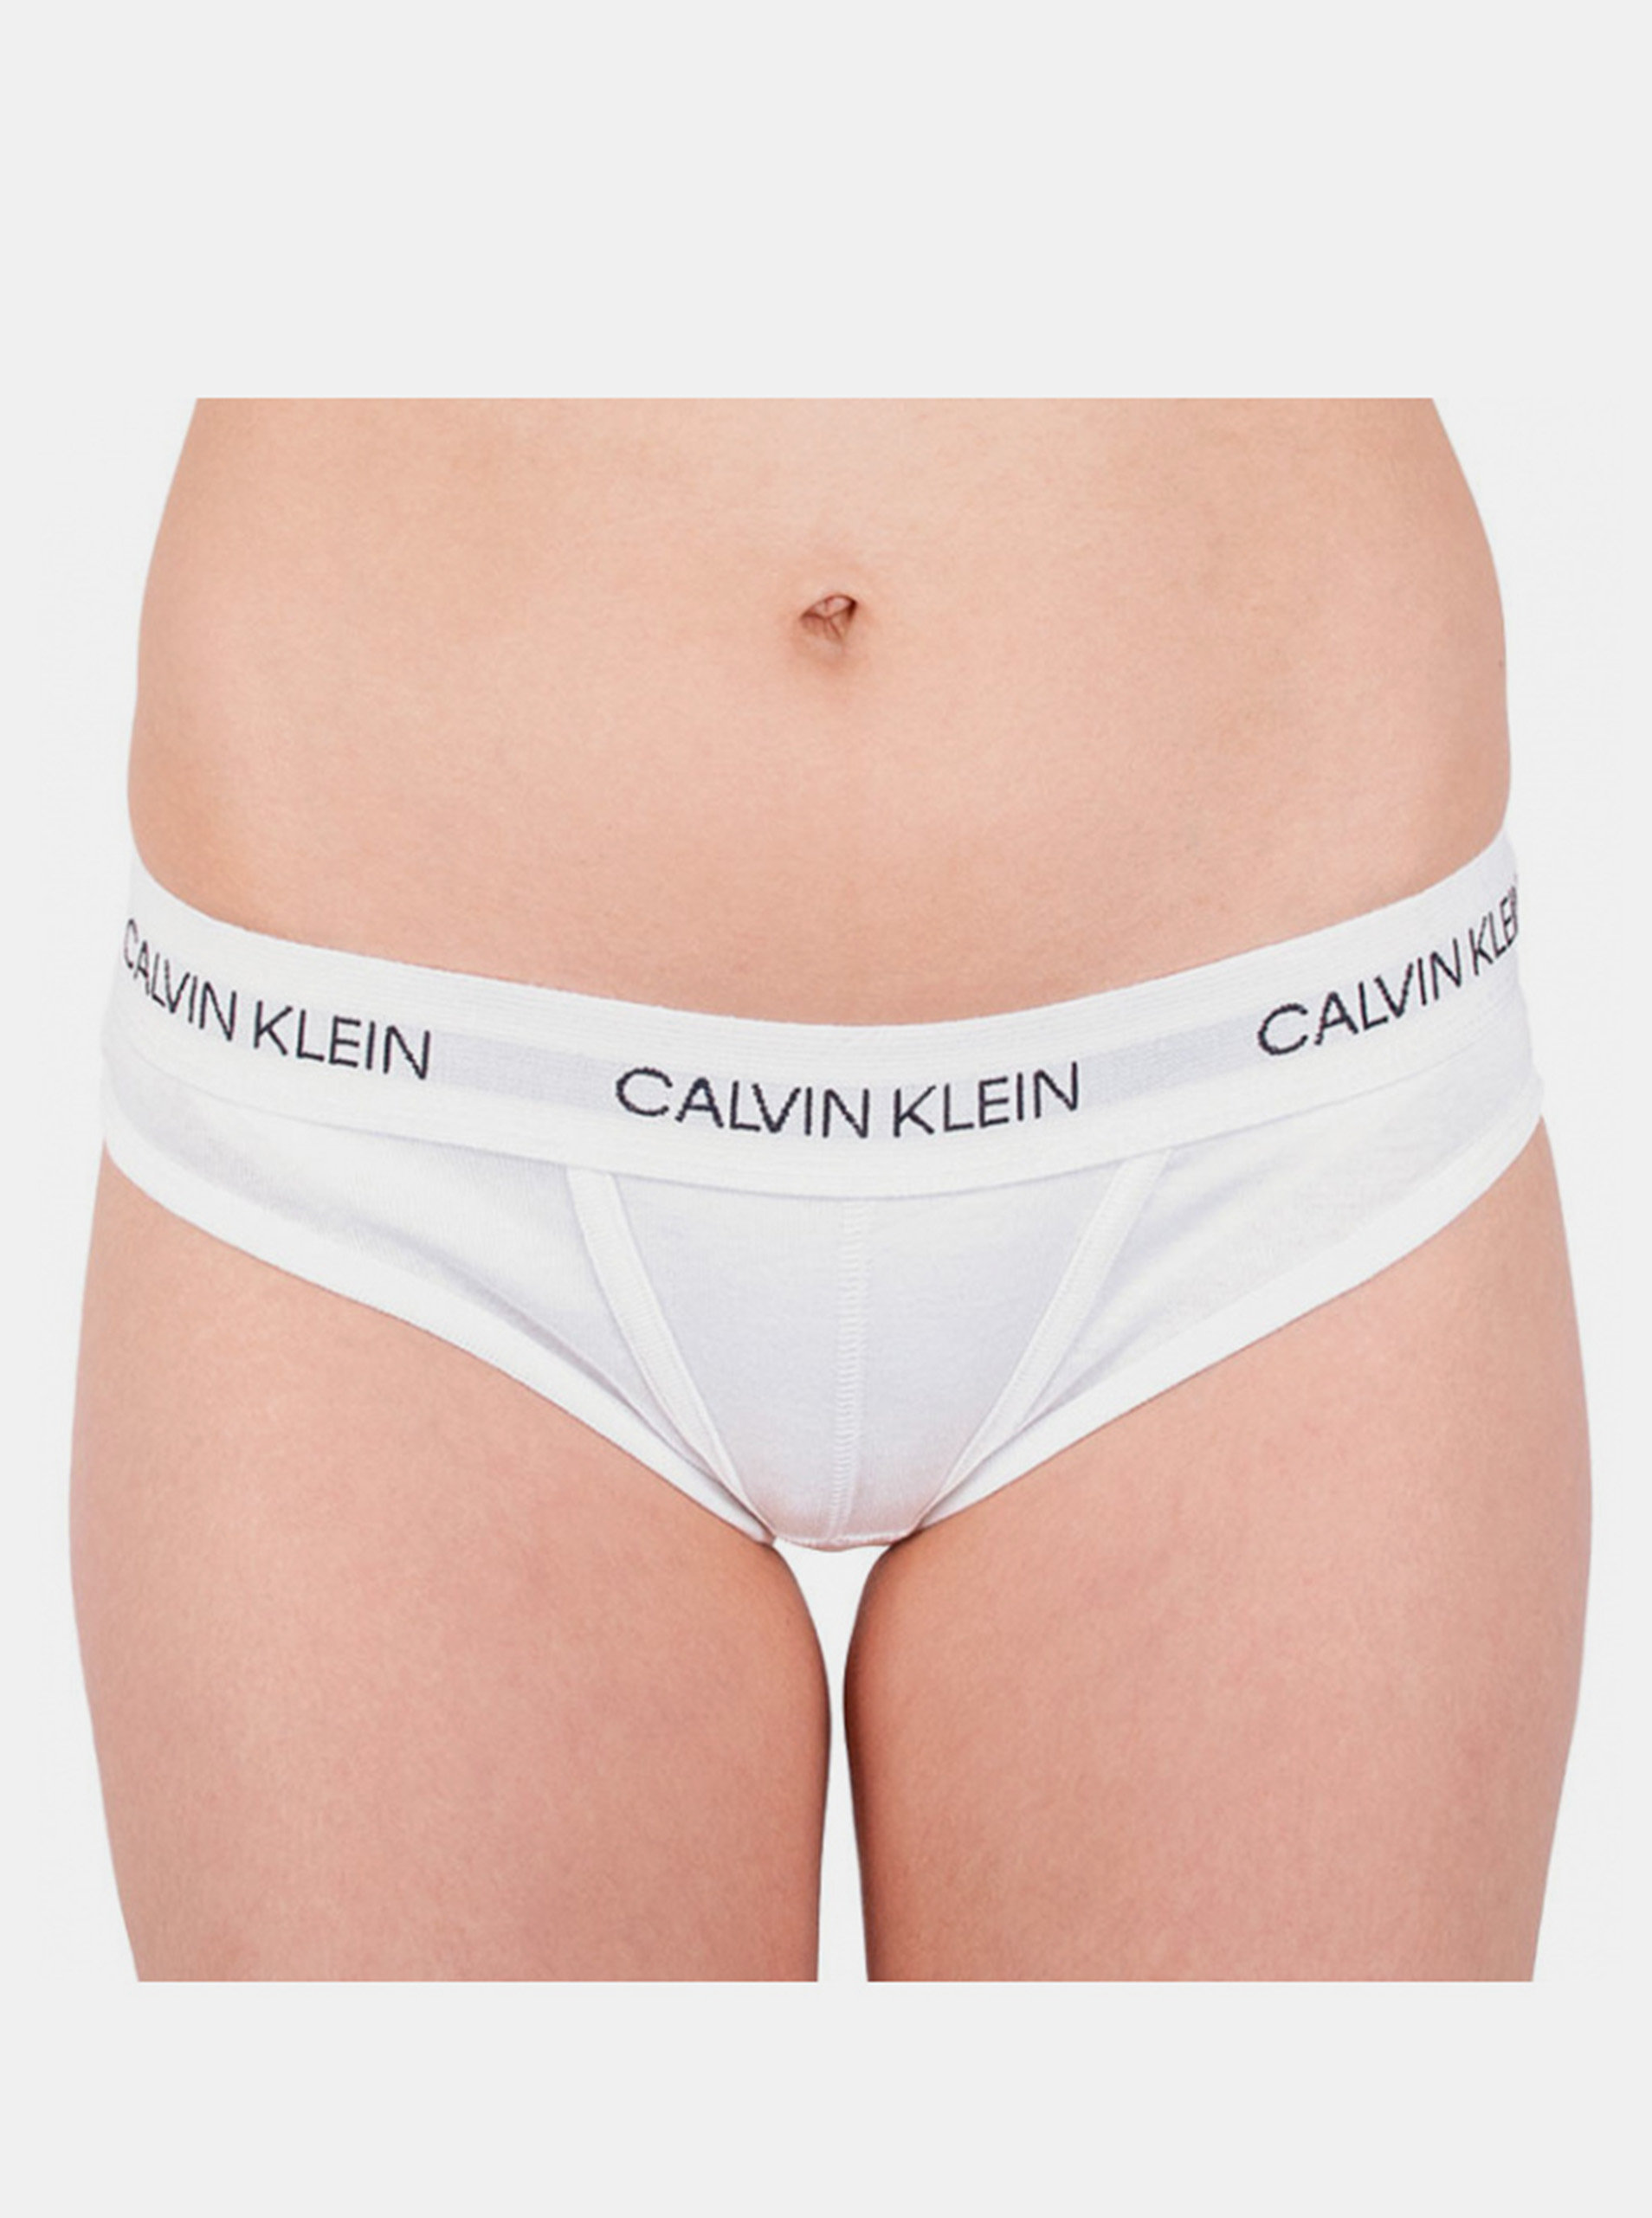 Fotografie Dámské kalhotky Calvin Klein bílé